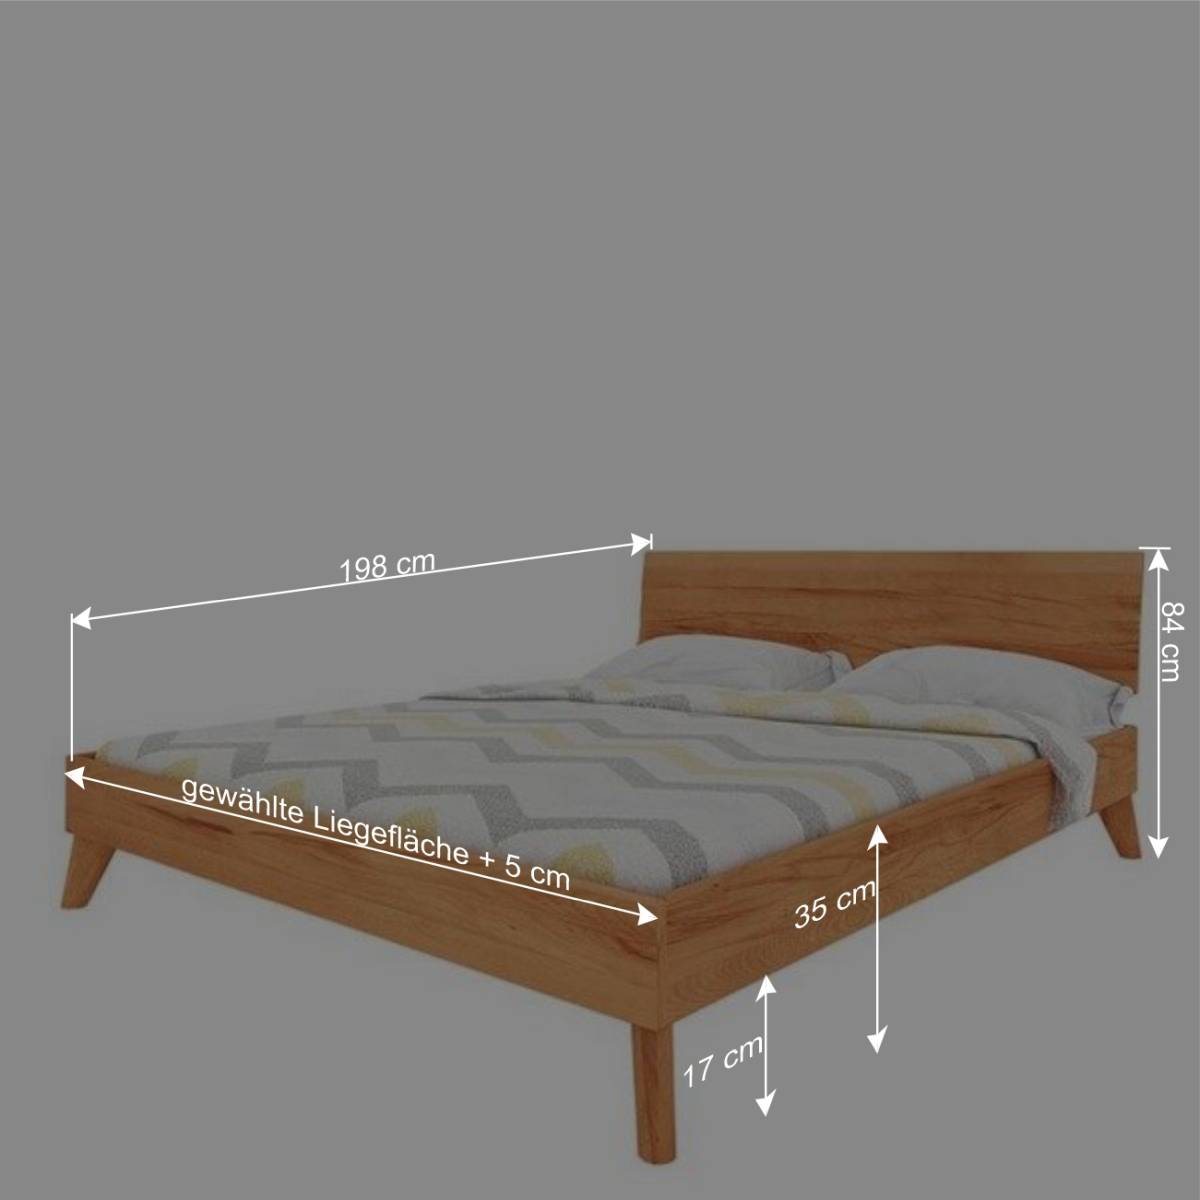 Kernbuche Bett in Unterlänge 190 cm - Junola